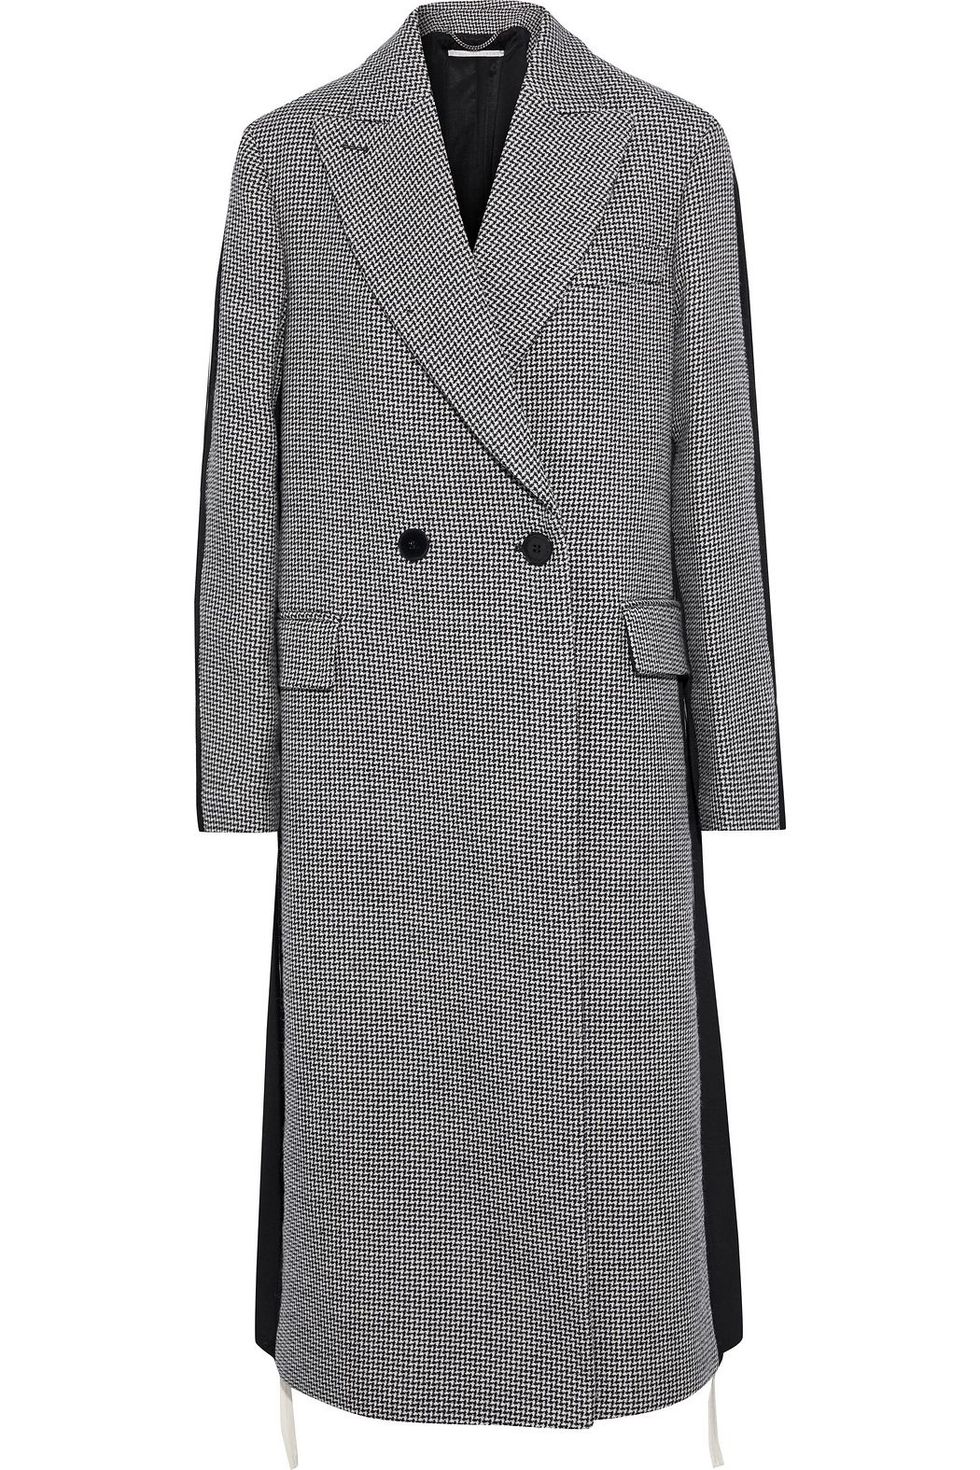 Il cappotto grigio doppiopetto